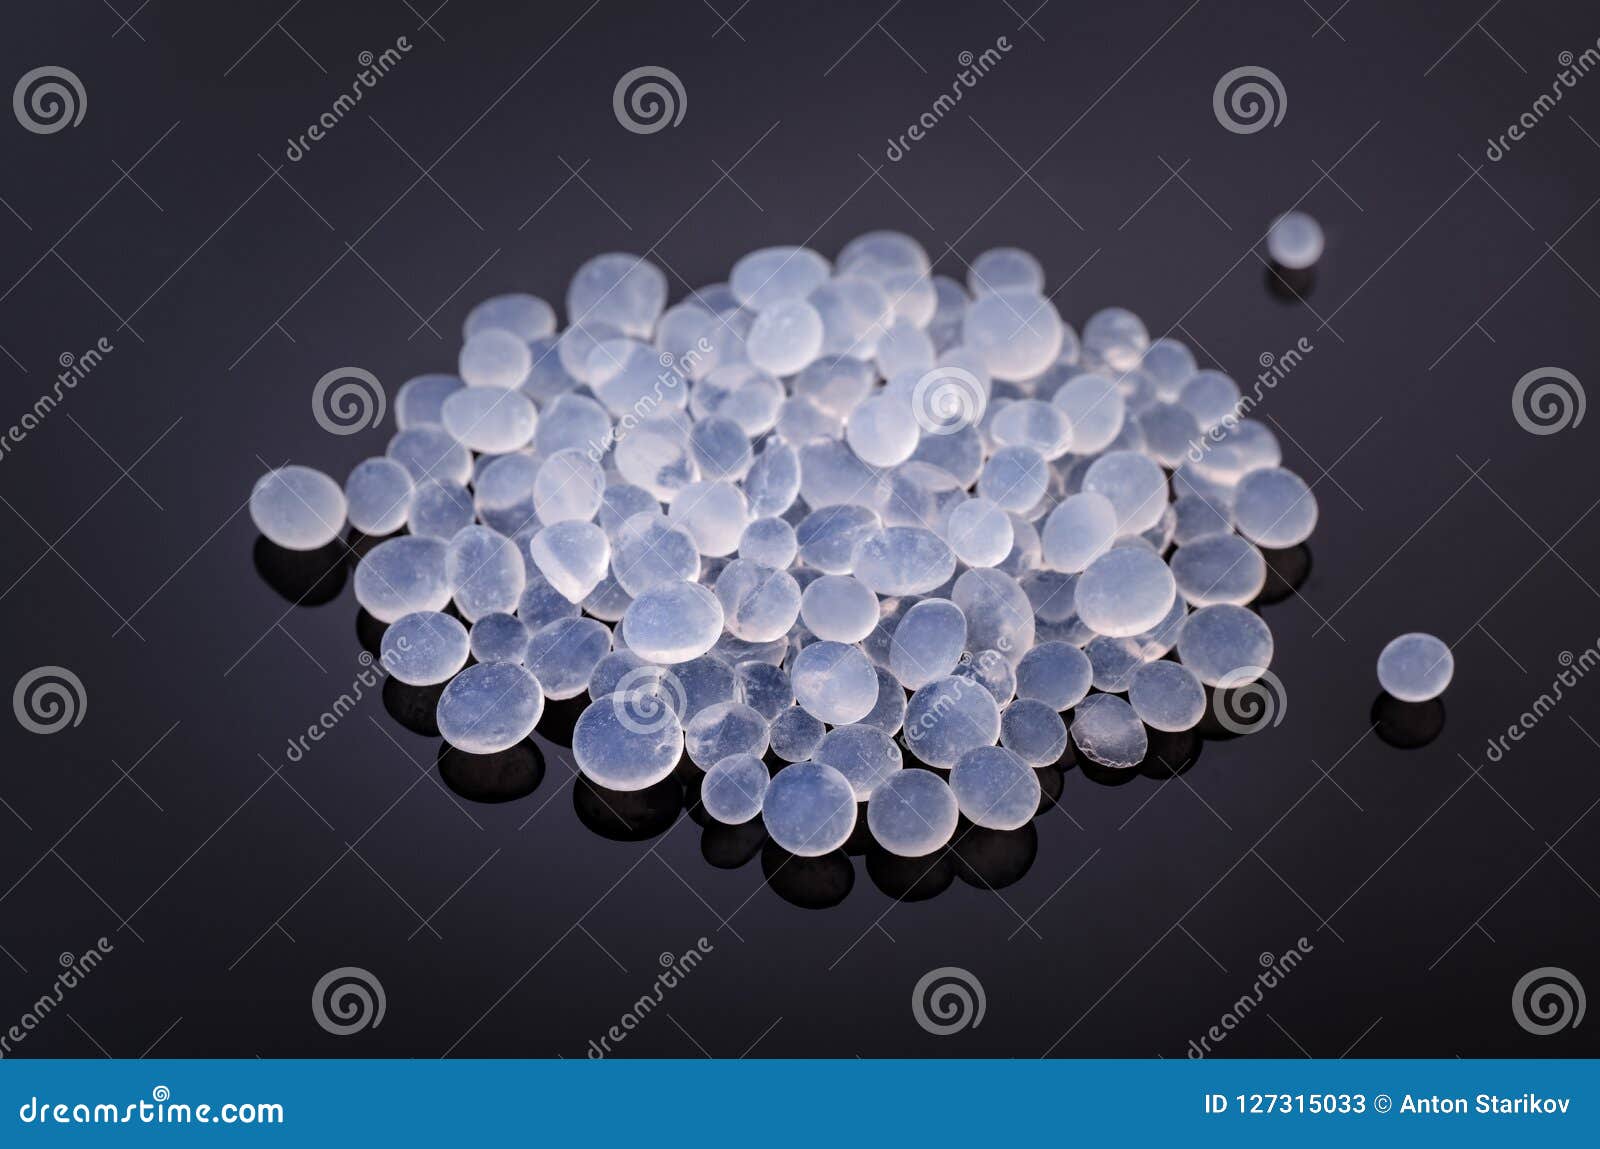 pile of silica gel granules